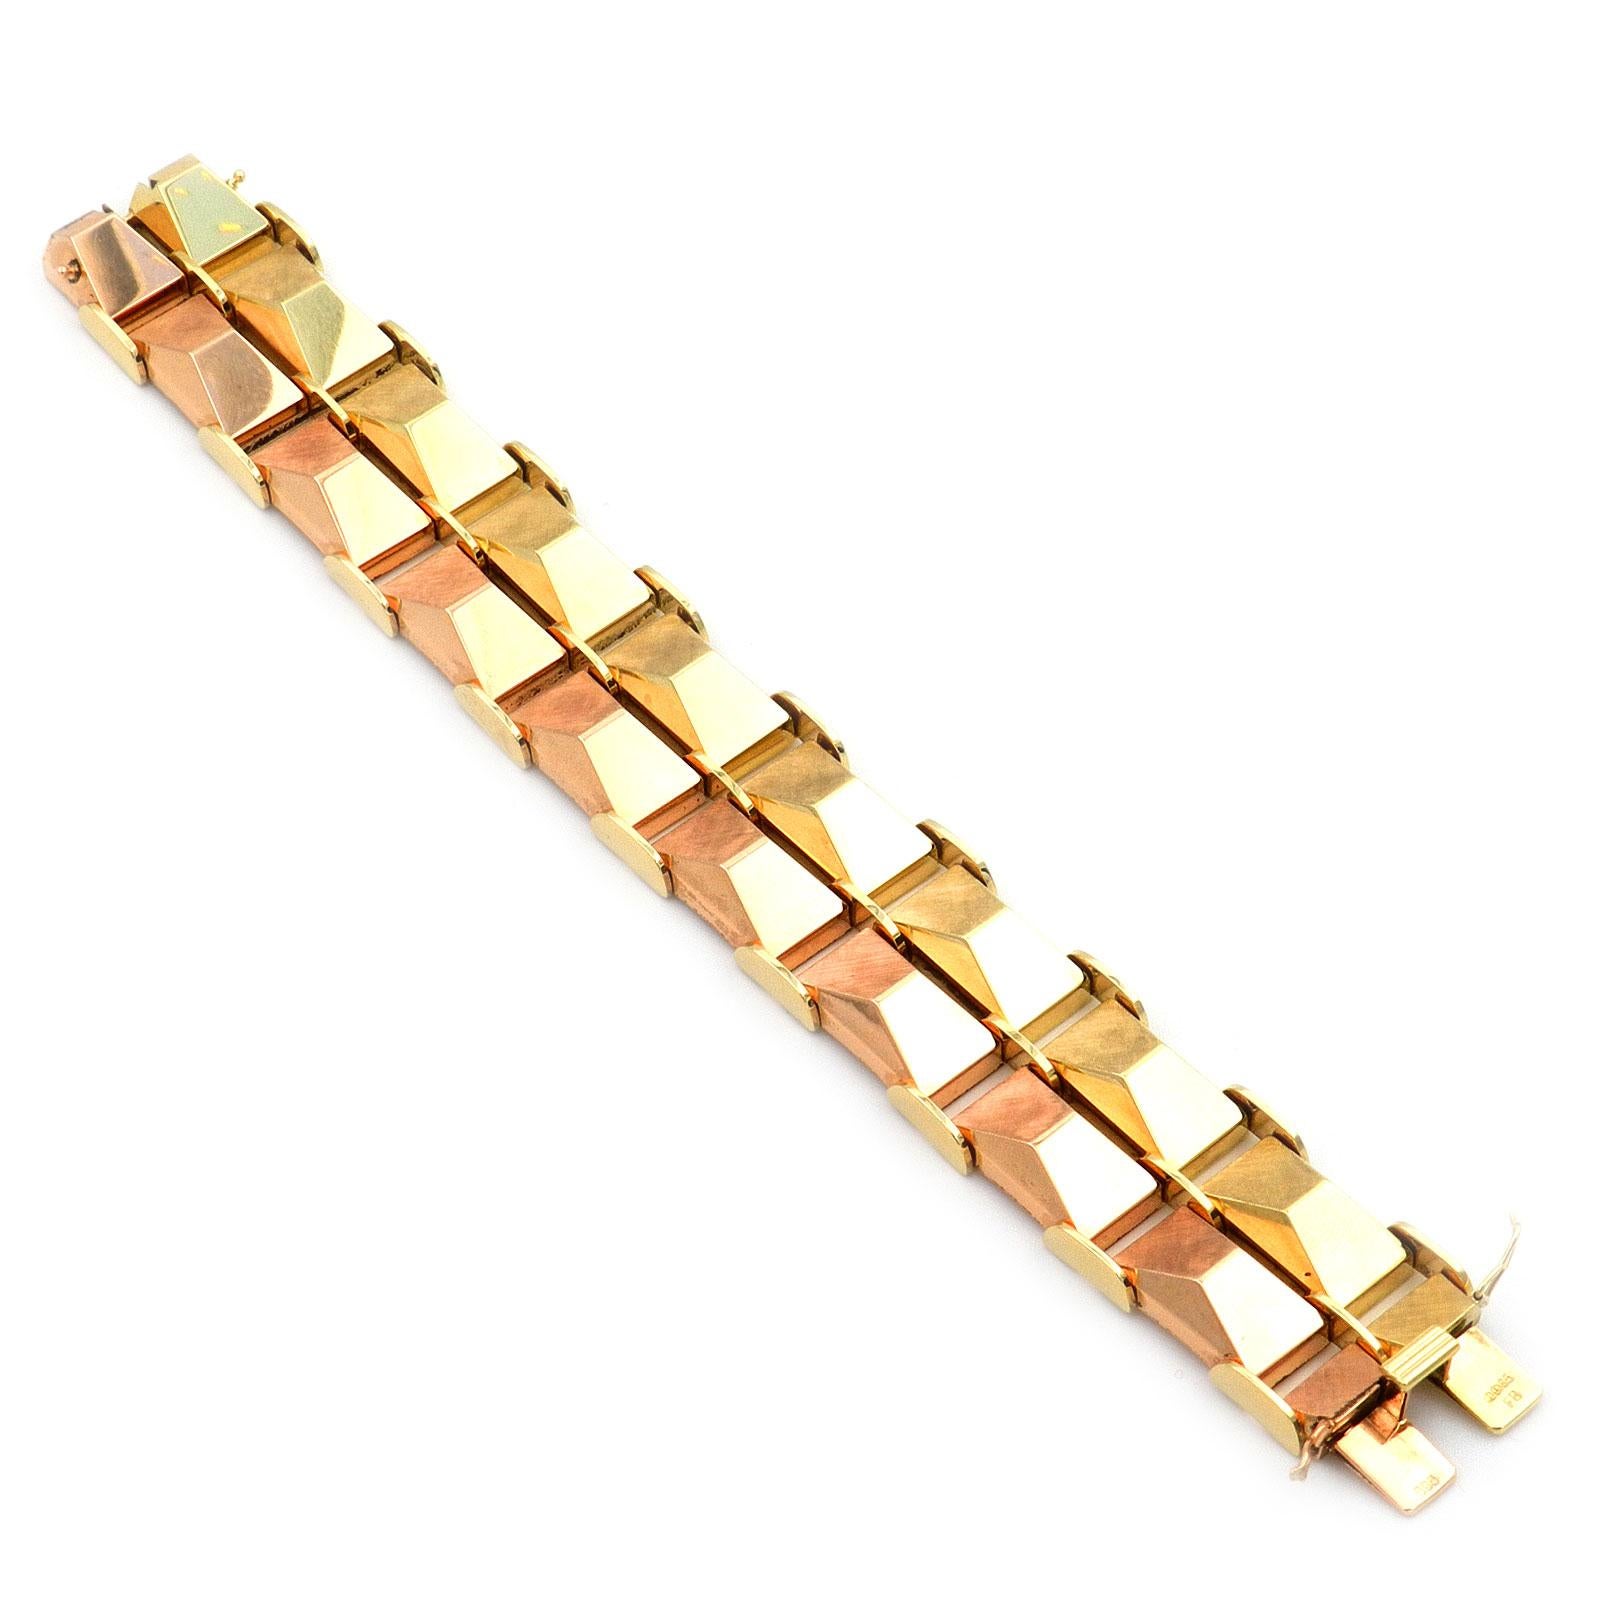 Retro 14K Zweifarbiges Goldarmband, Deutschland um 1950

Breites, schweres Goldarmband aus zweifarbigem Gold im Ziegelmuster, teilweise fein satiniert. Die rhombusförmigen Glieder sind auf der einen Seite poliert, auf der anderen satiniert und in